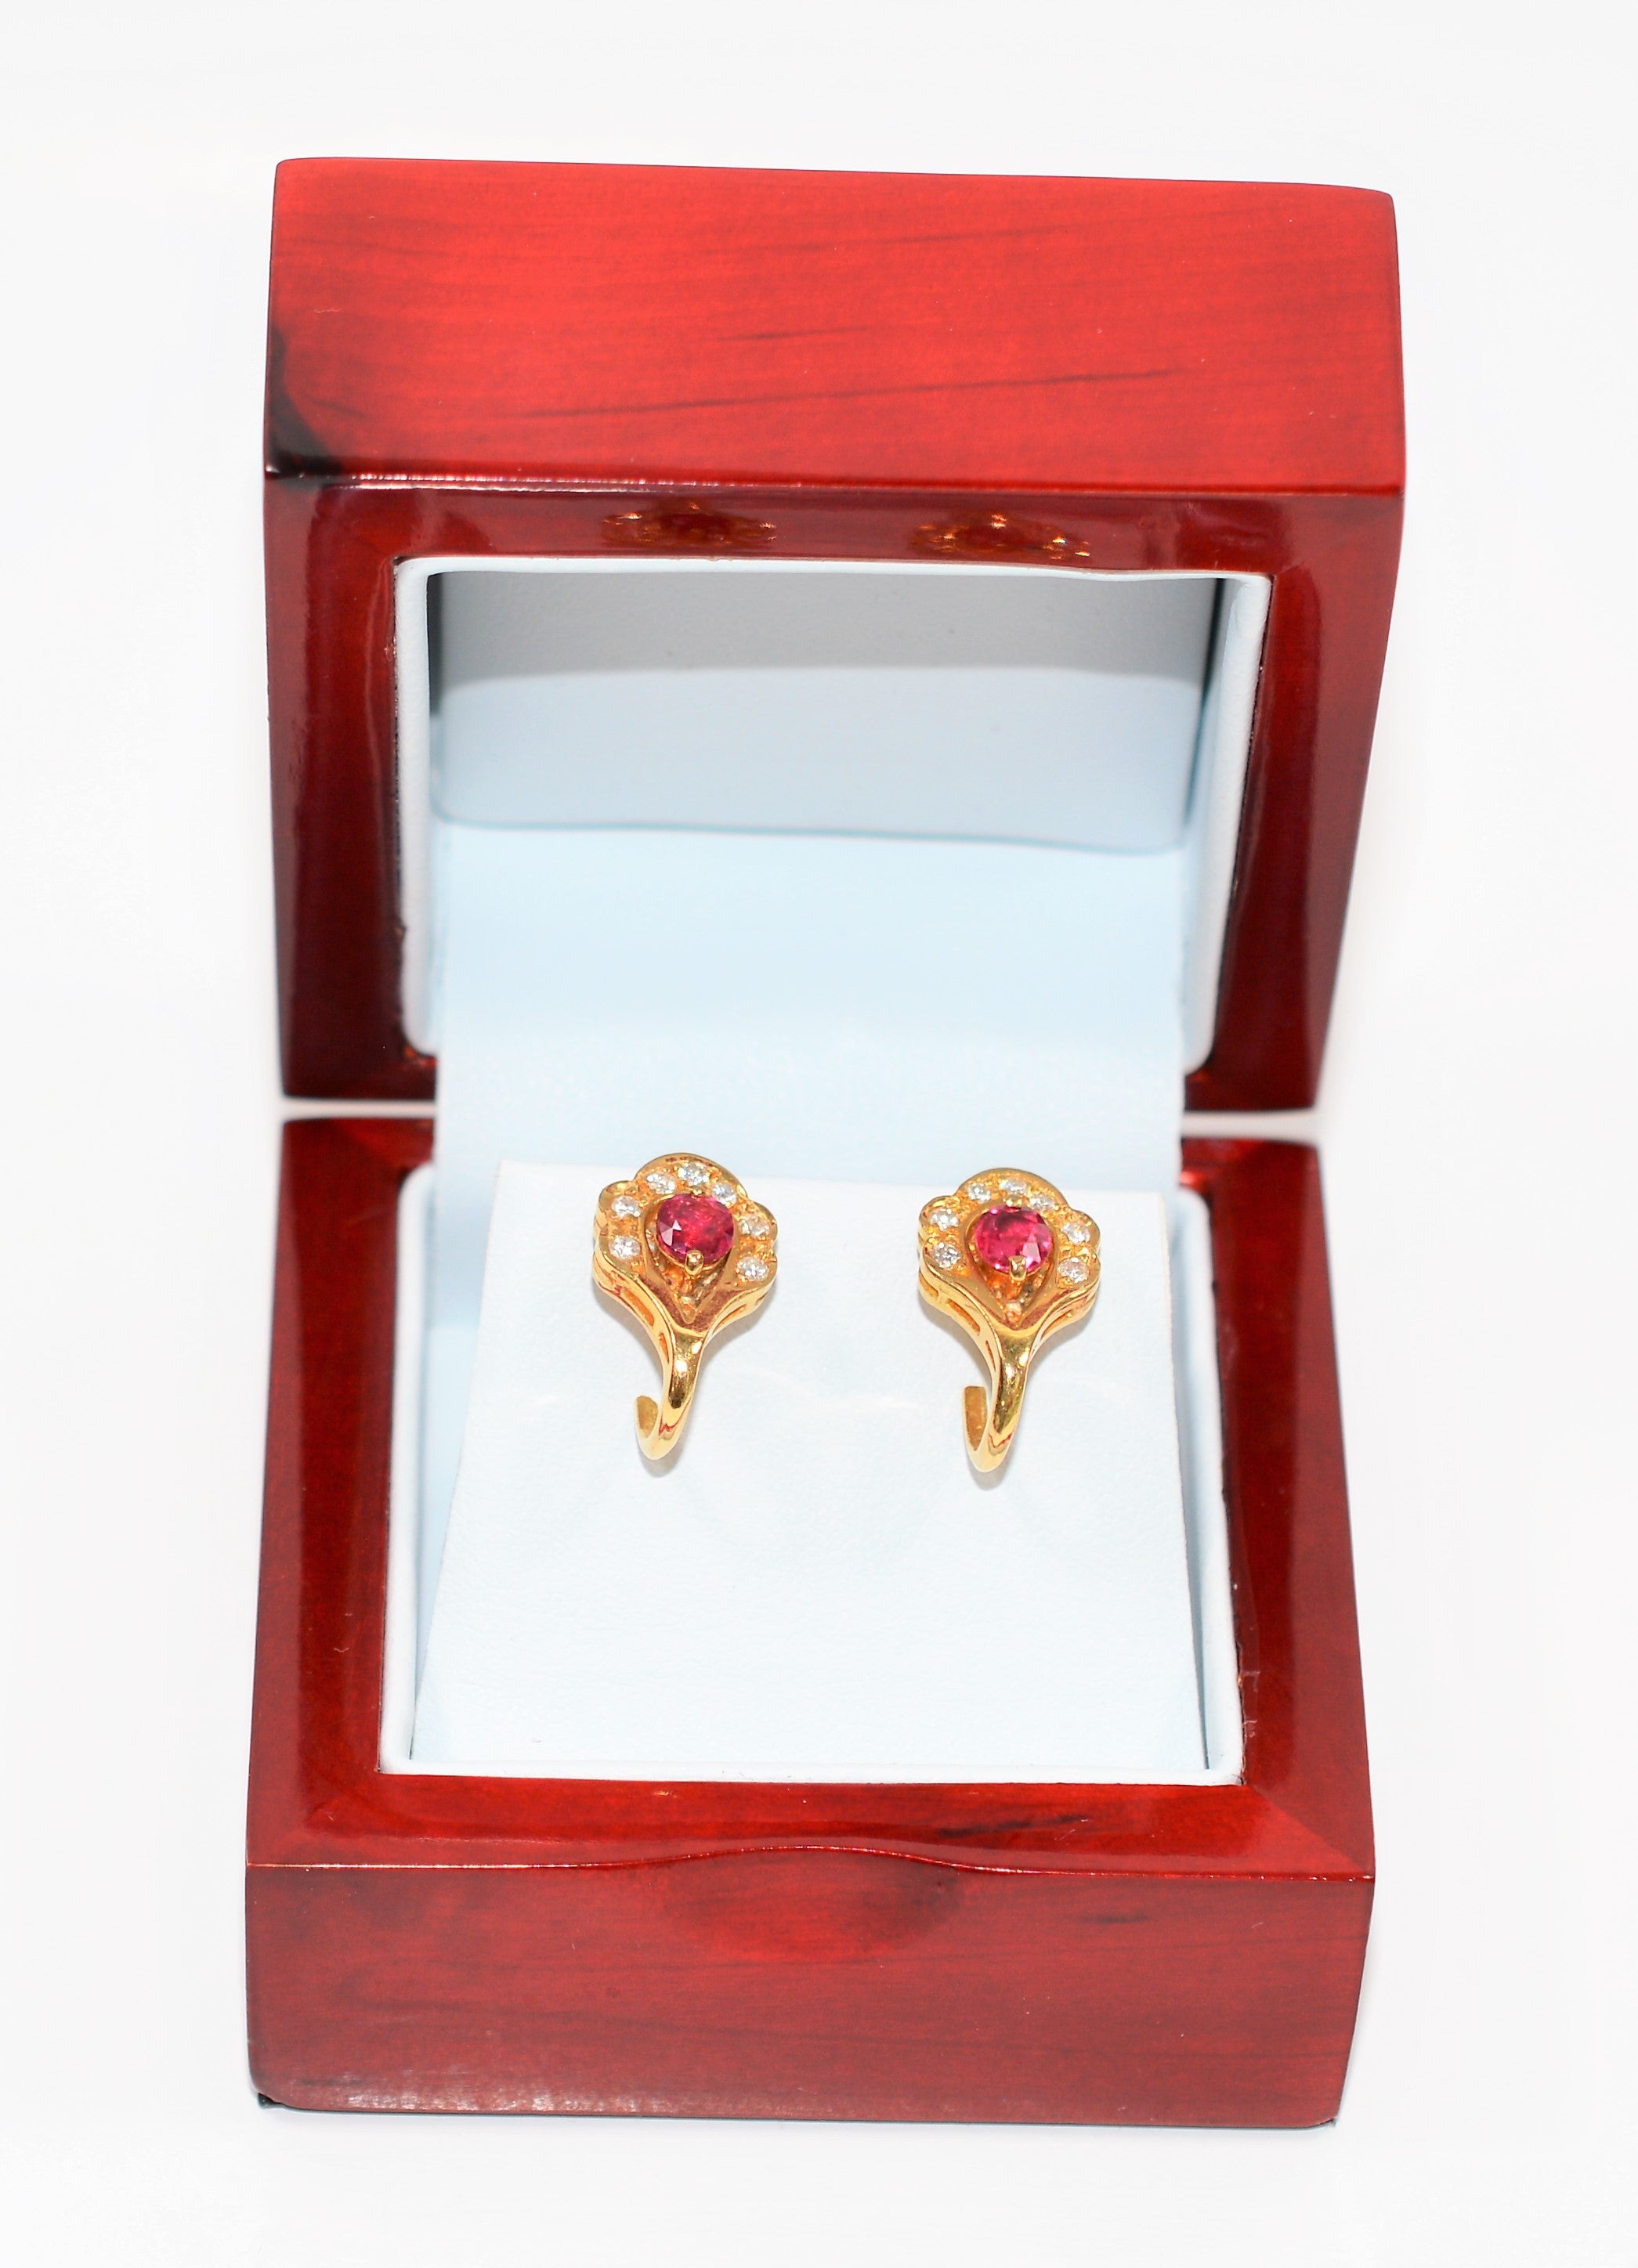 Natural Burmese Ruby & Diamond Earrings 18K Solid Gold  1.25tcw Ruby Earrings Gemstone Earrings Cocktail Earrings Statement Women's Earrings